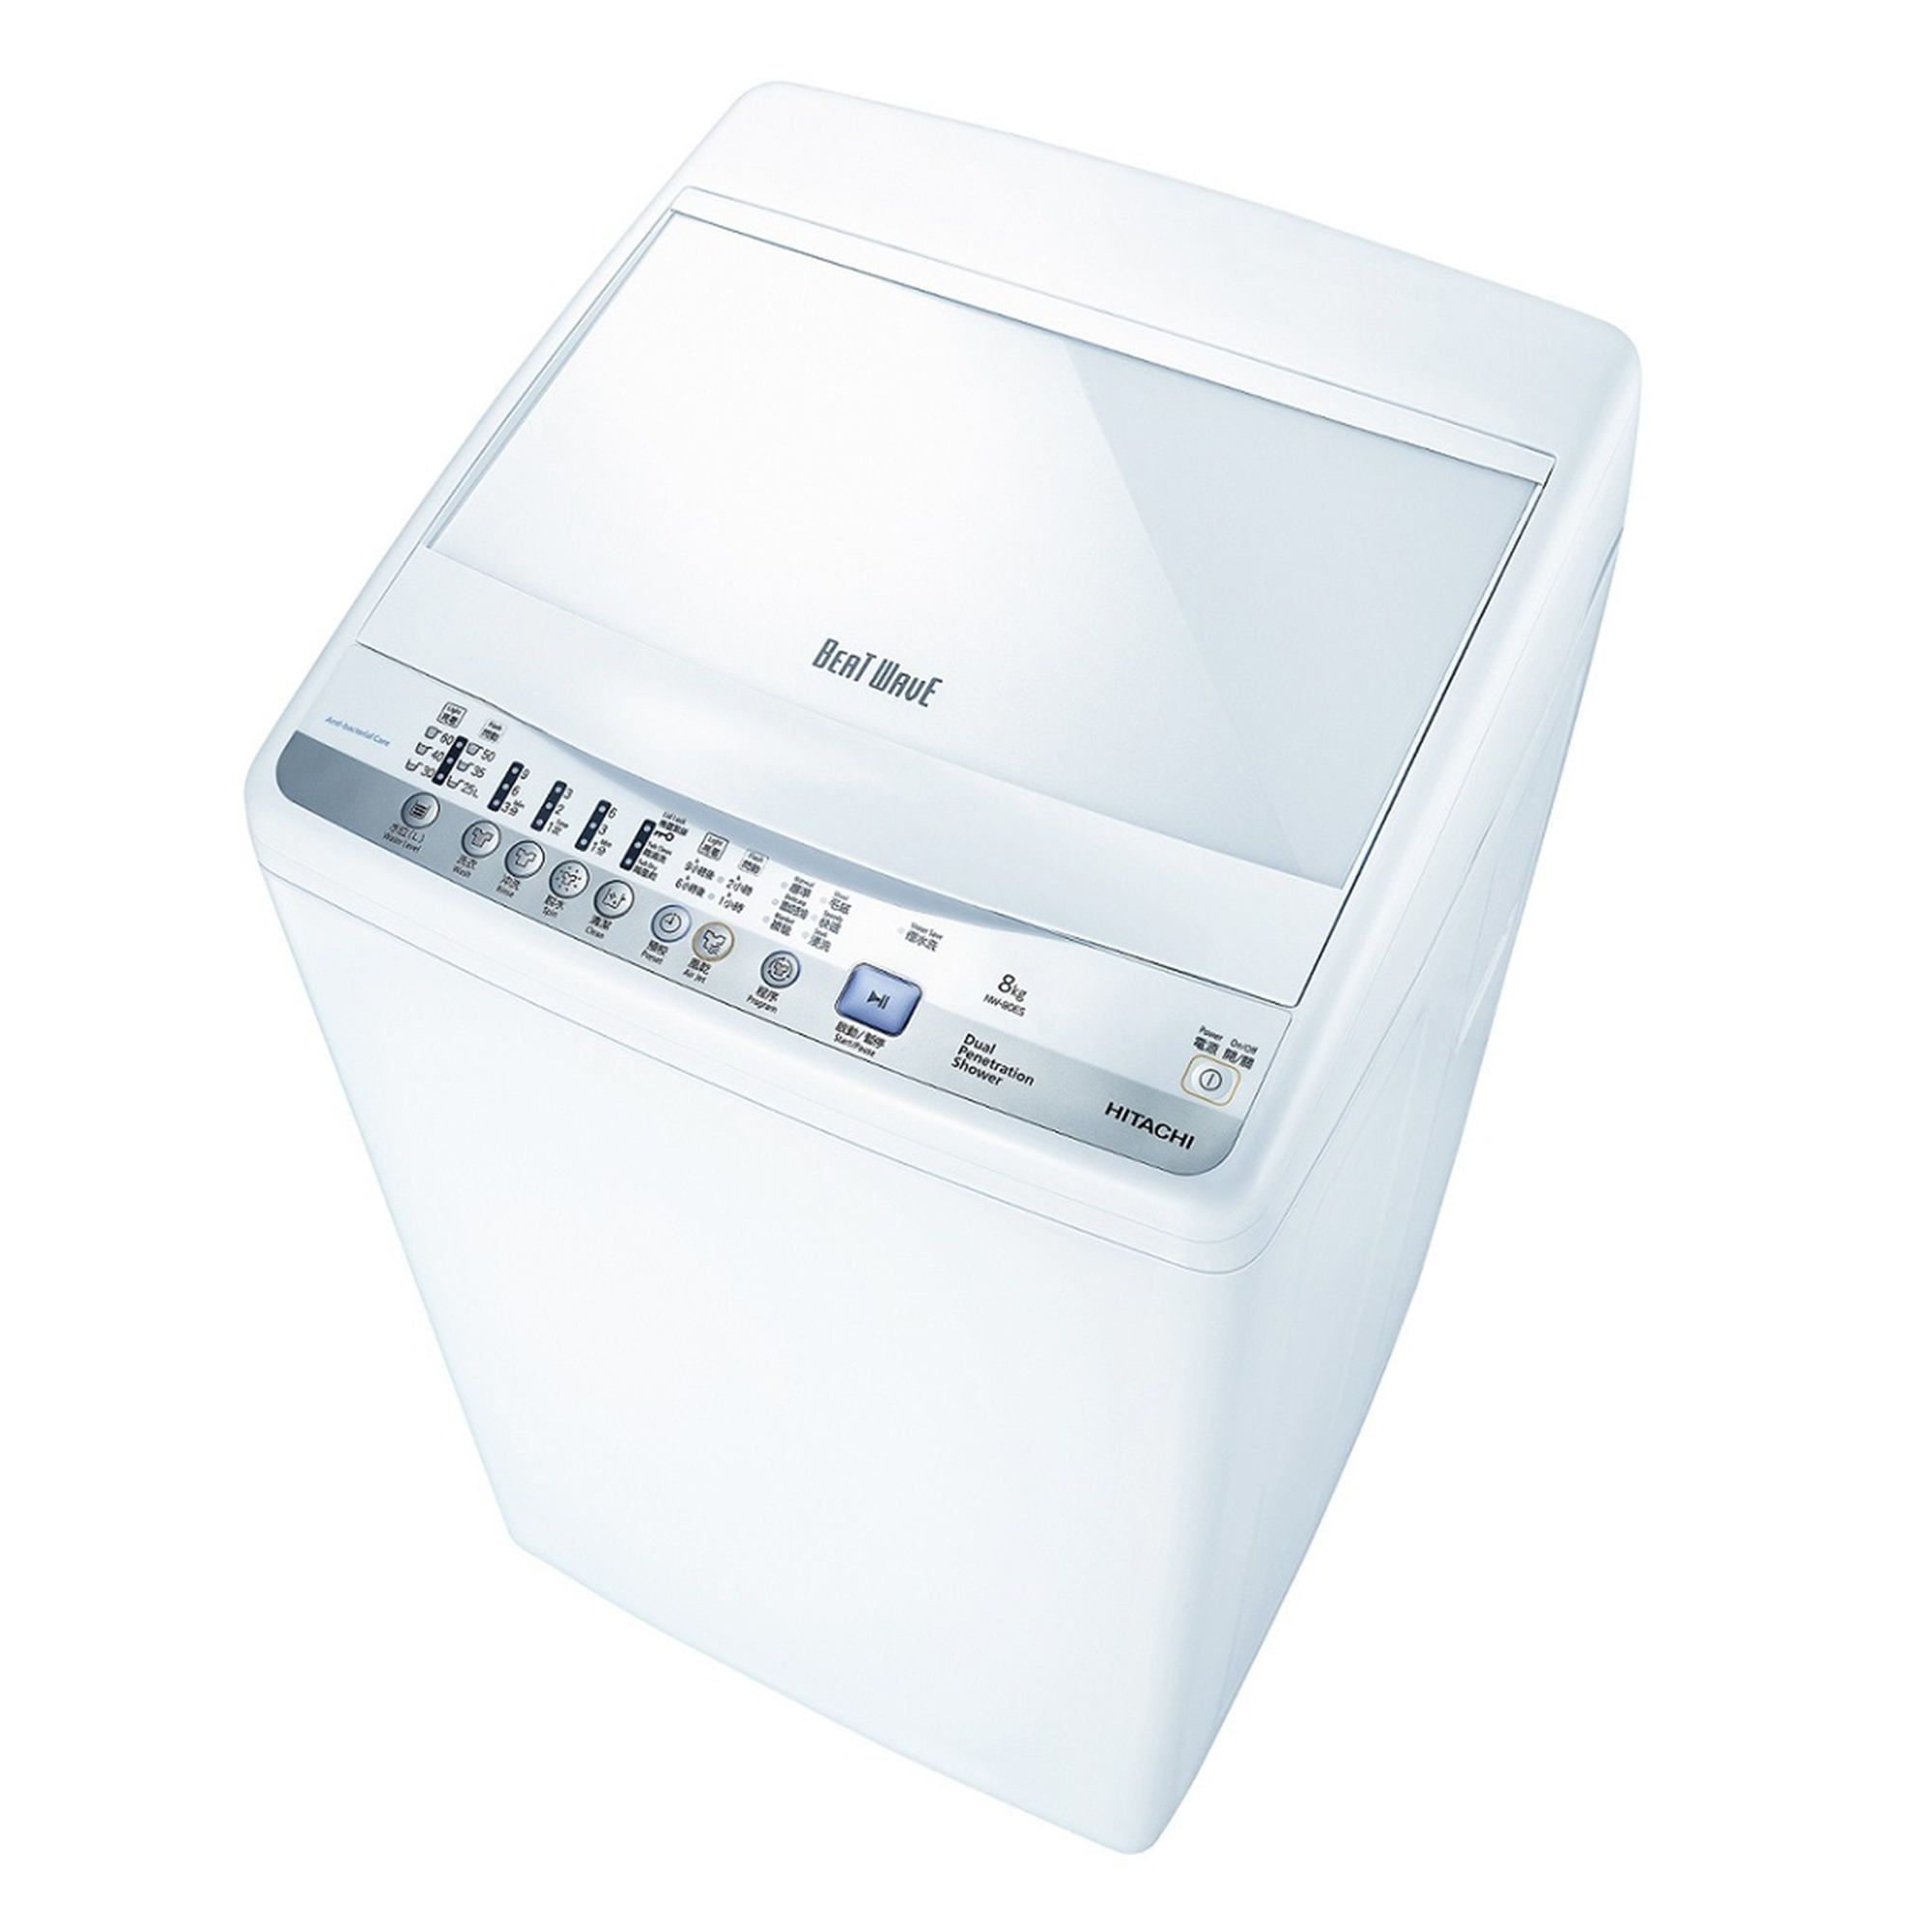 HITACHI 8KG洗衣機-高水位 NW80ESPW-白